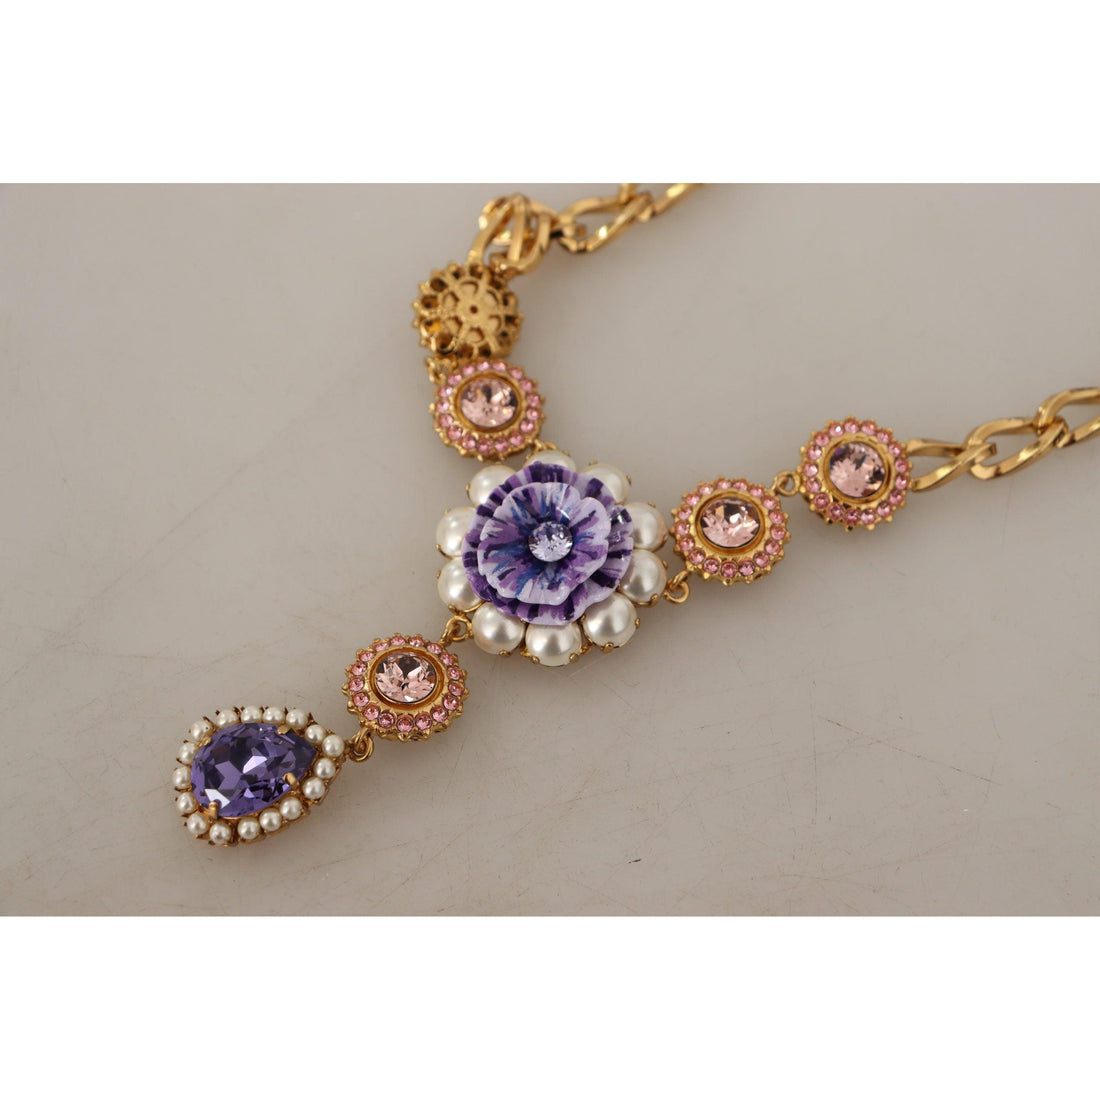 Dolce & Gabbana Elegant Floral Crystal Statement Necklace